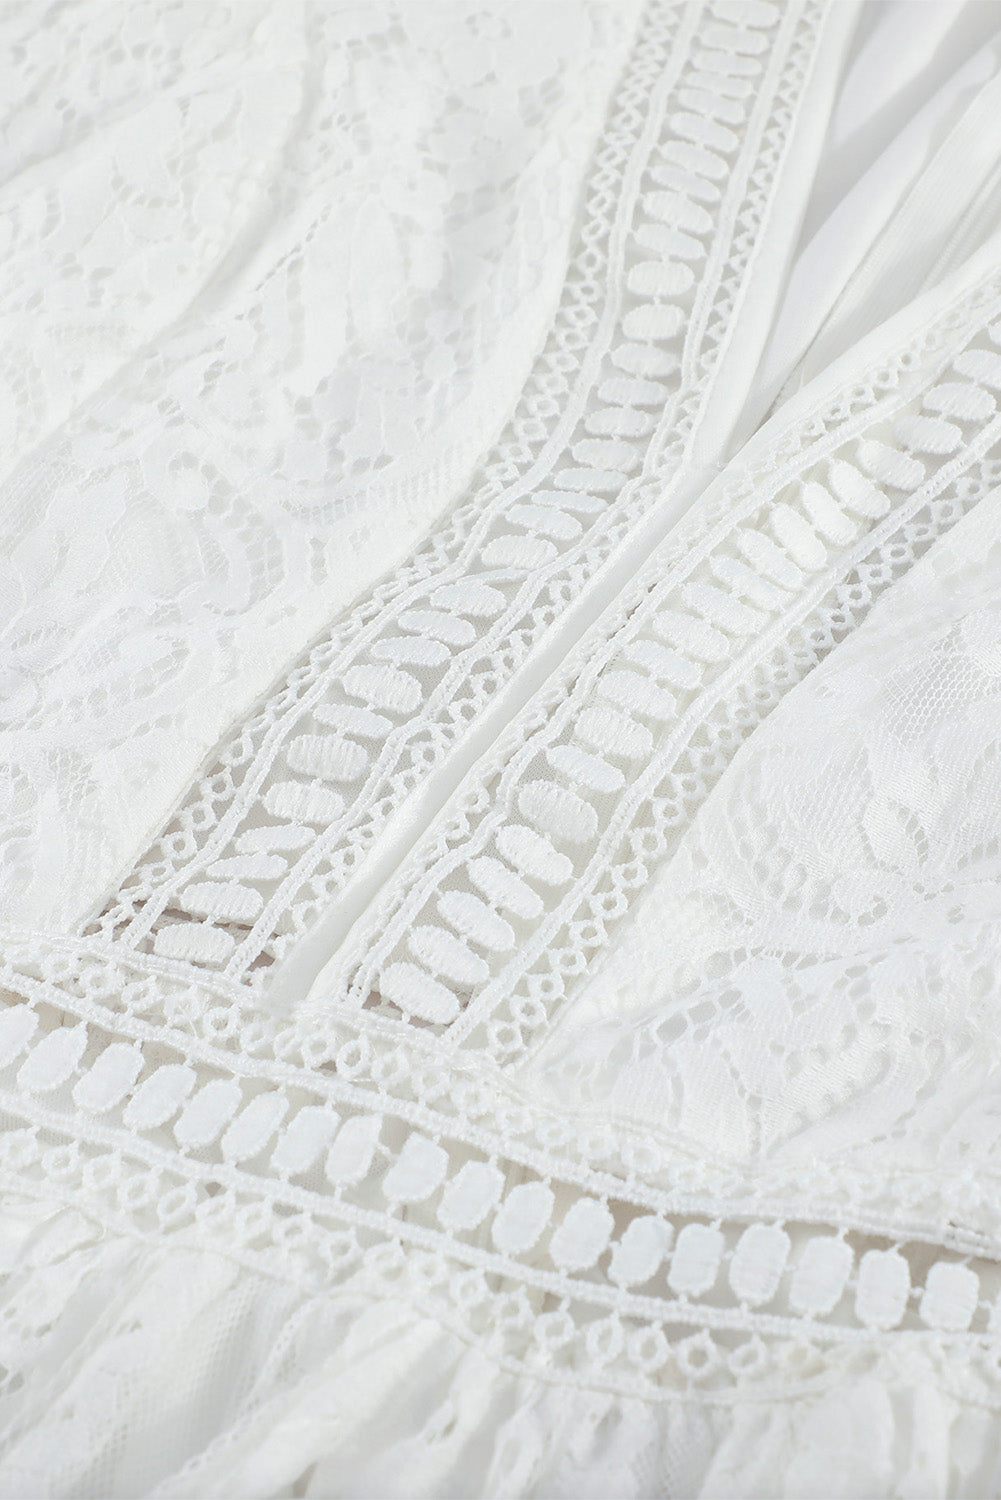 Elegant White Boho Lace Maxi Dresses